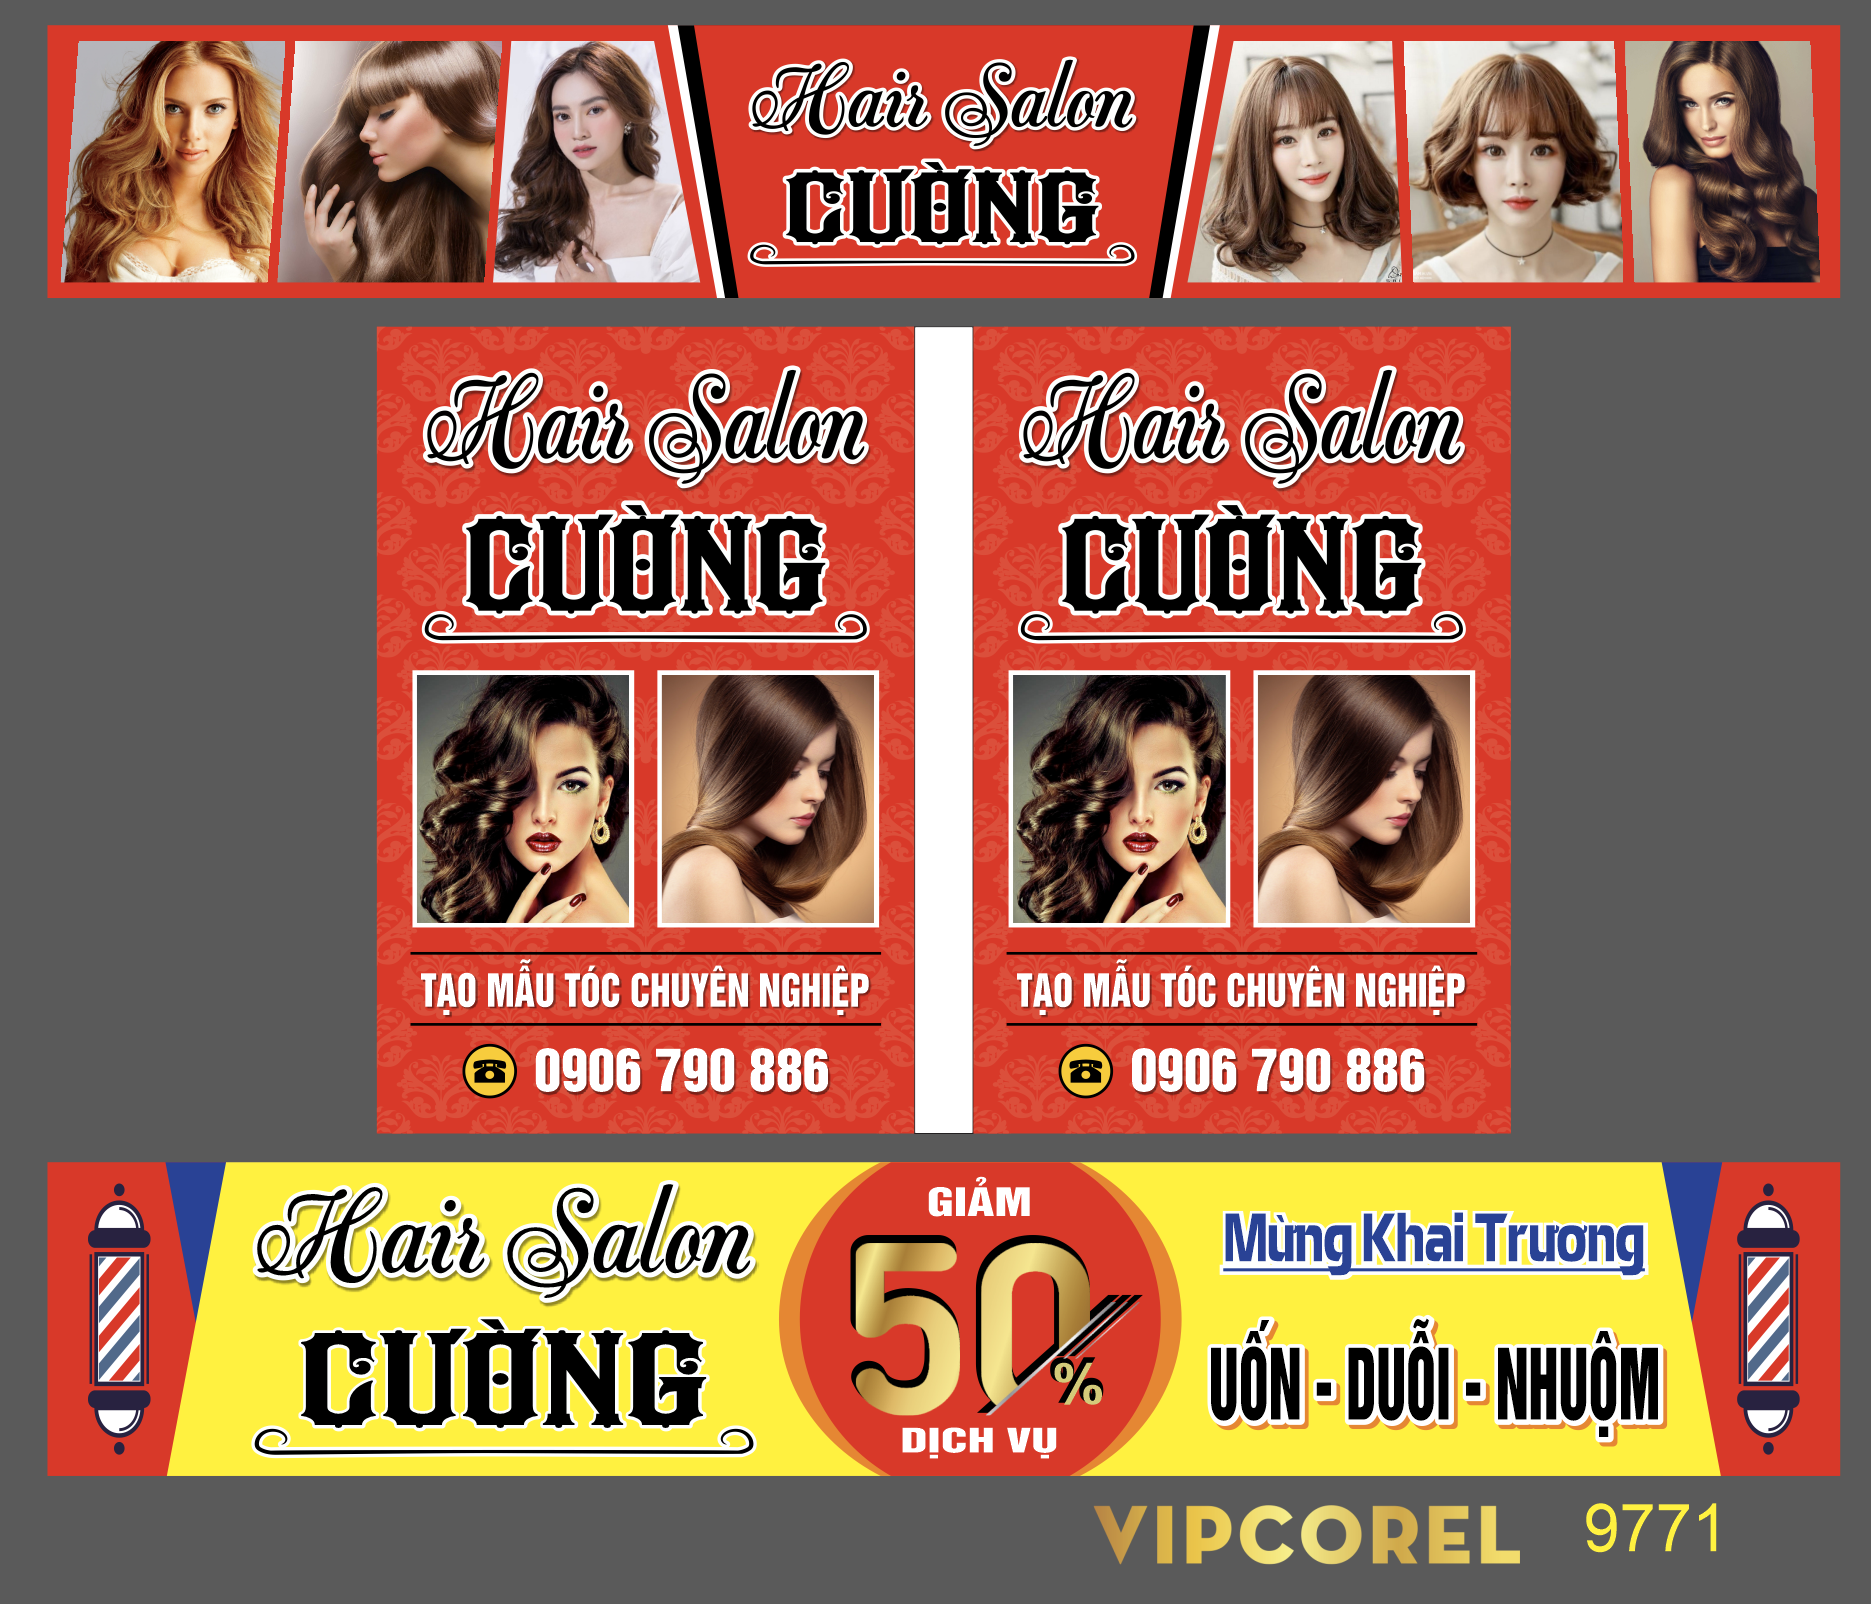 hair salon cuong - uon duoi nhuom.png